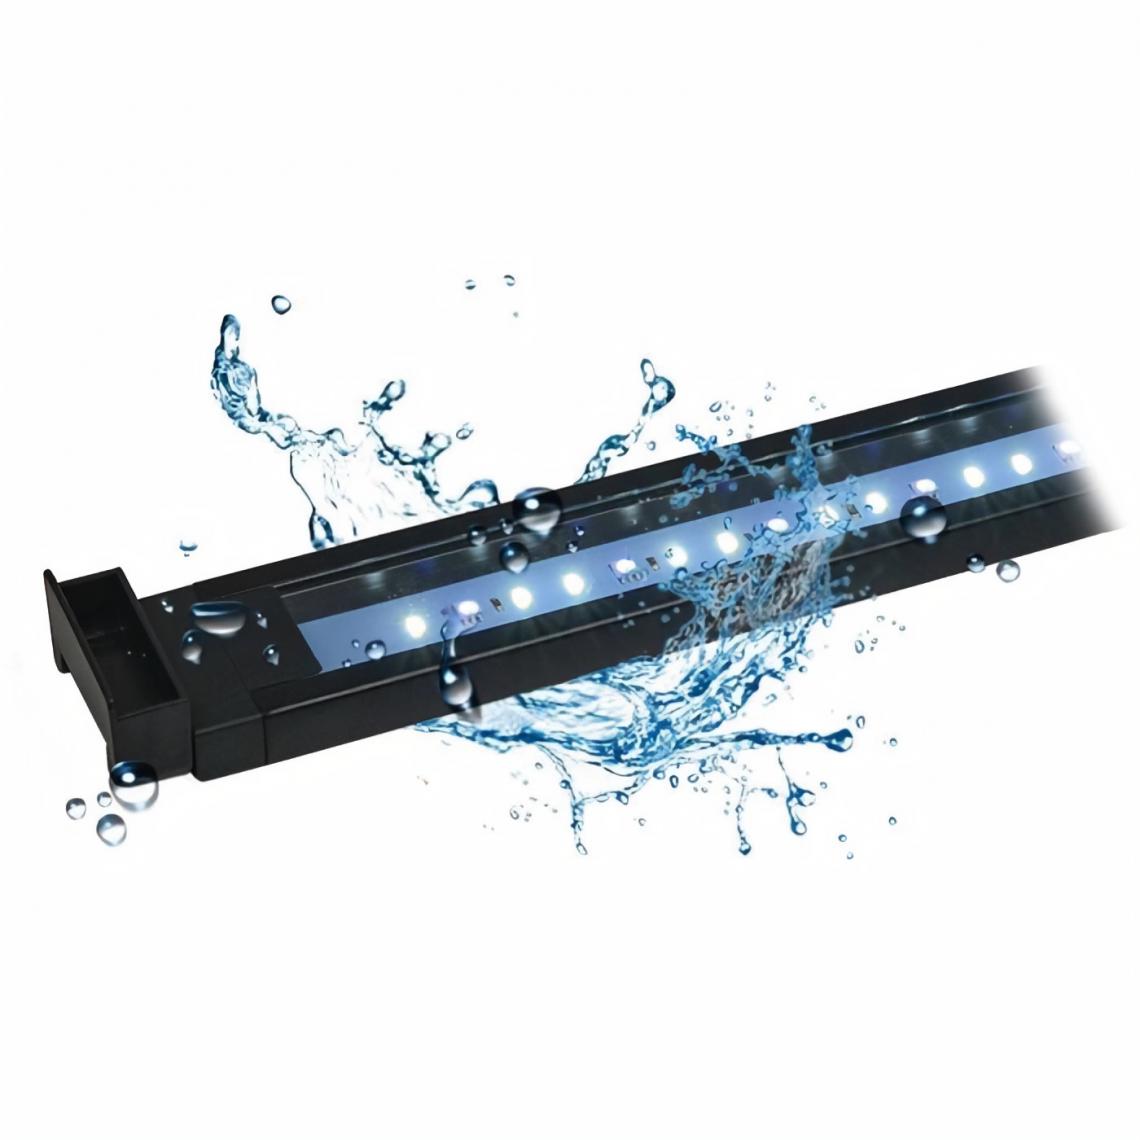 Fluval - Eclairage AquaSky LED 2.0 w/ BLTH 38-61cm - Equipement de l'aquarium